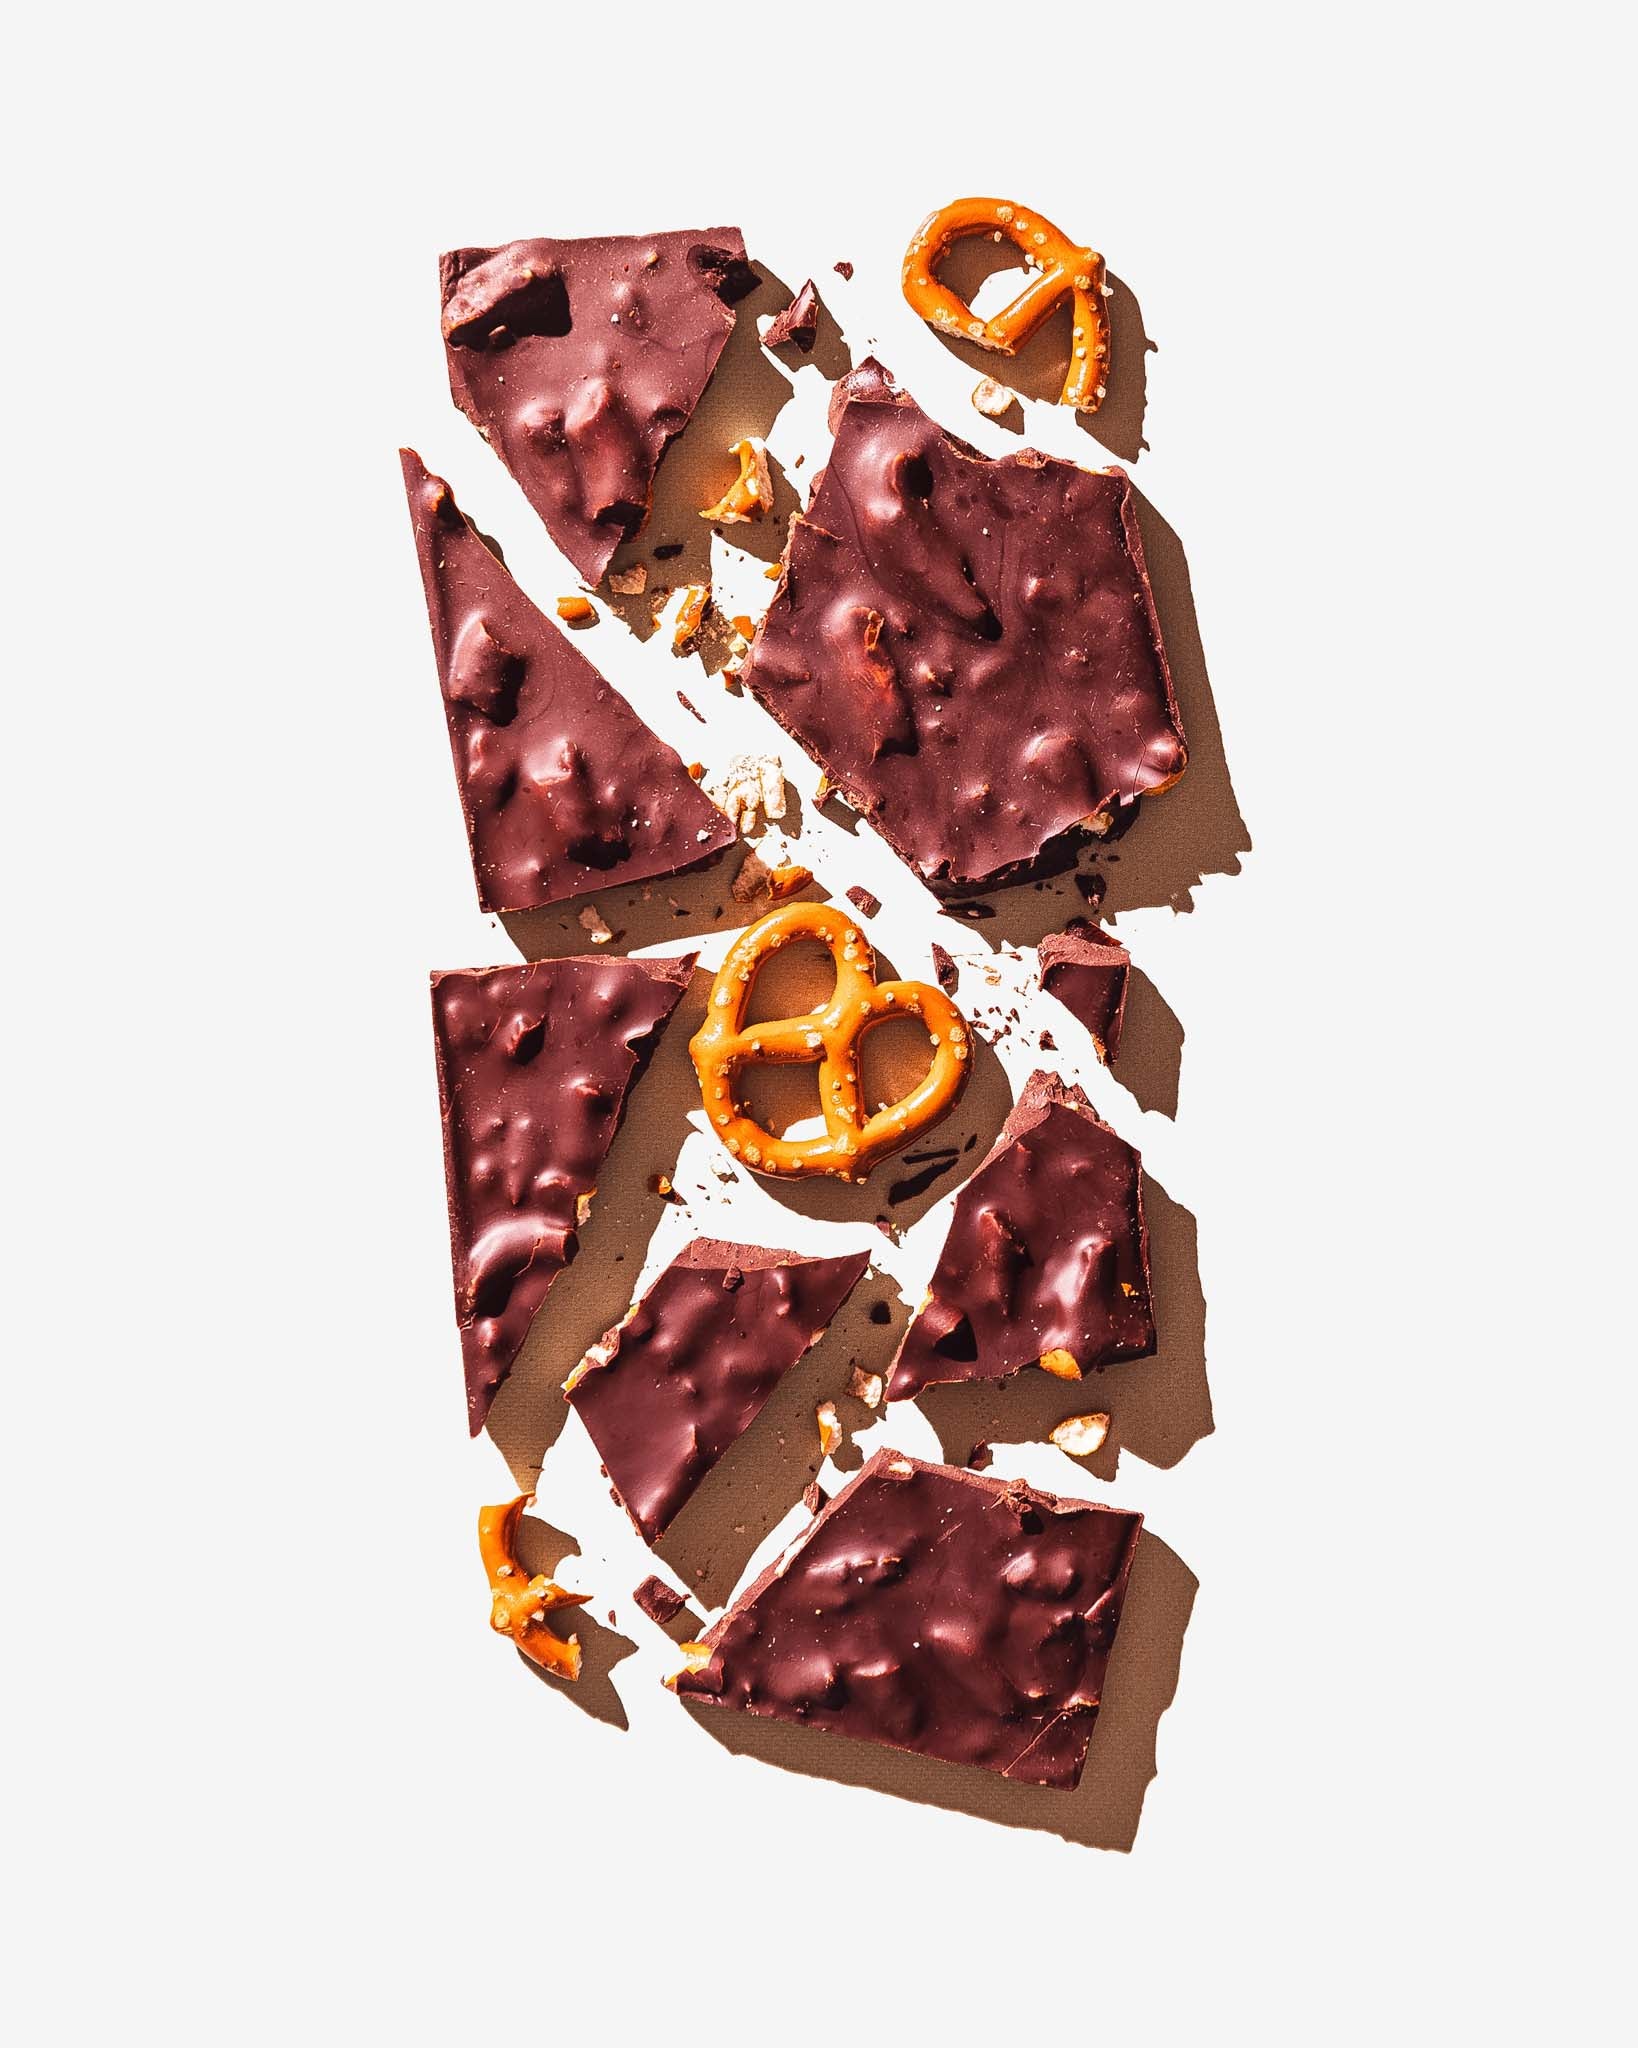 California Love Chocolate Pretzel Bar by Compartes, broken up into pieces	